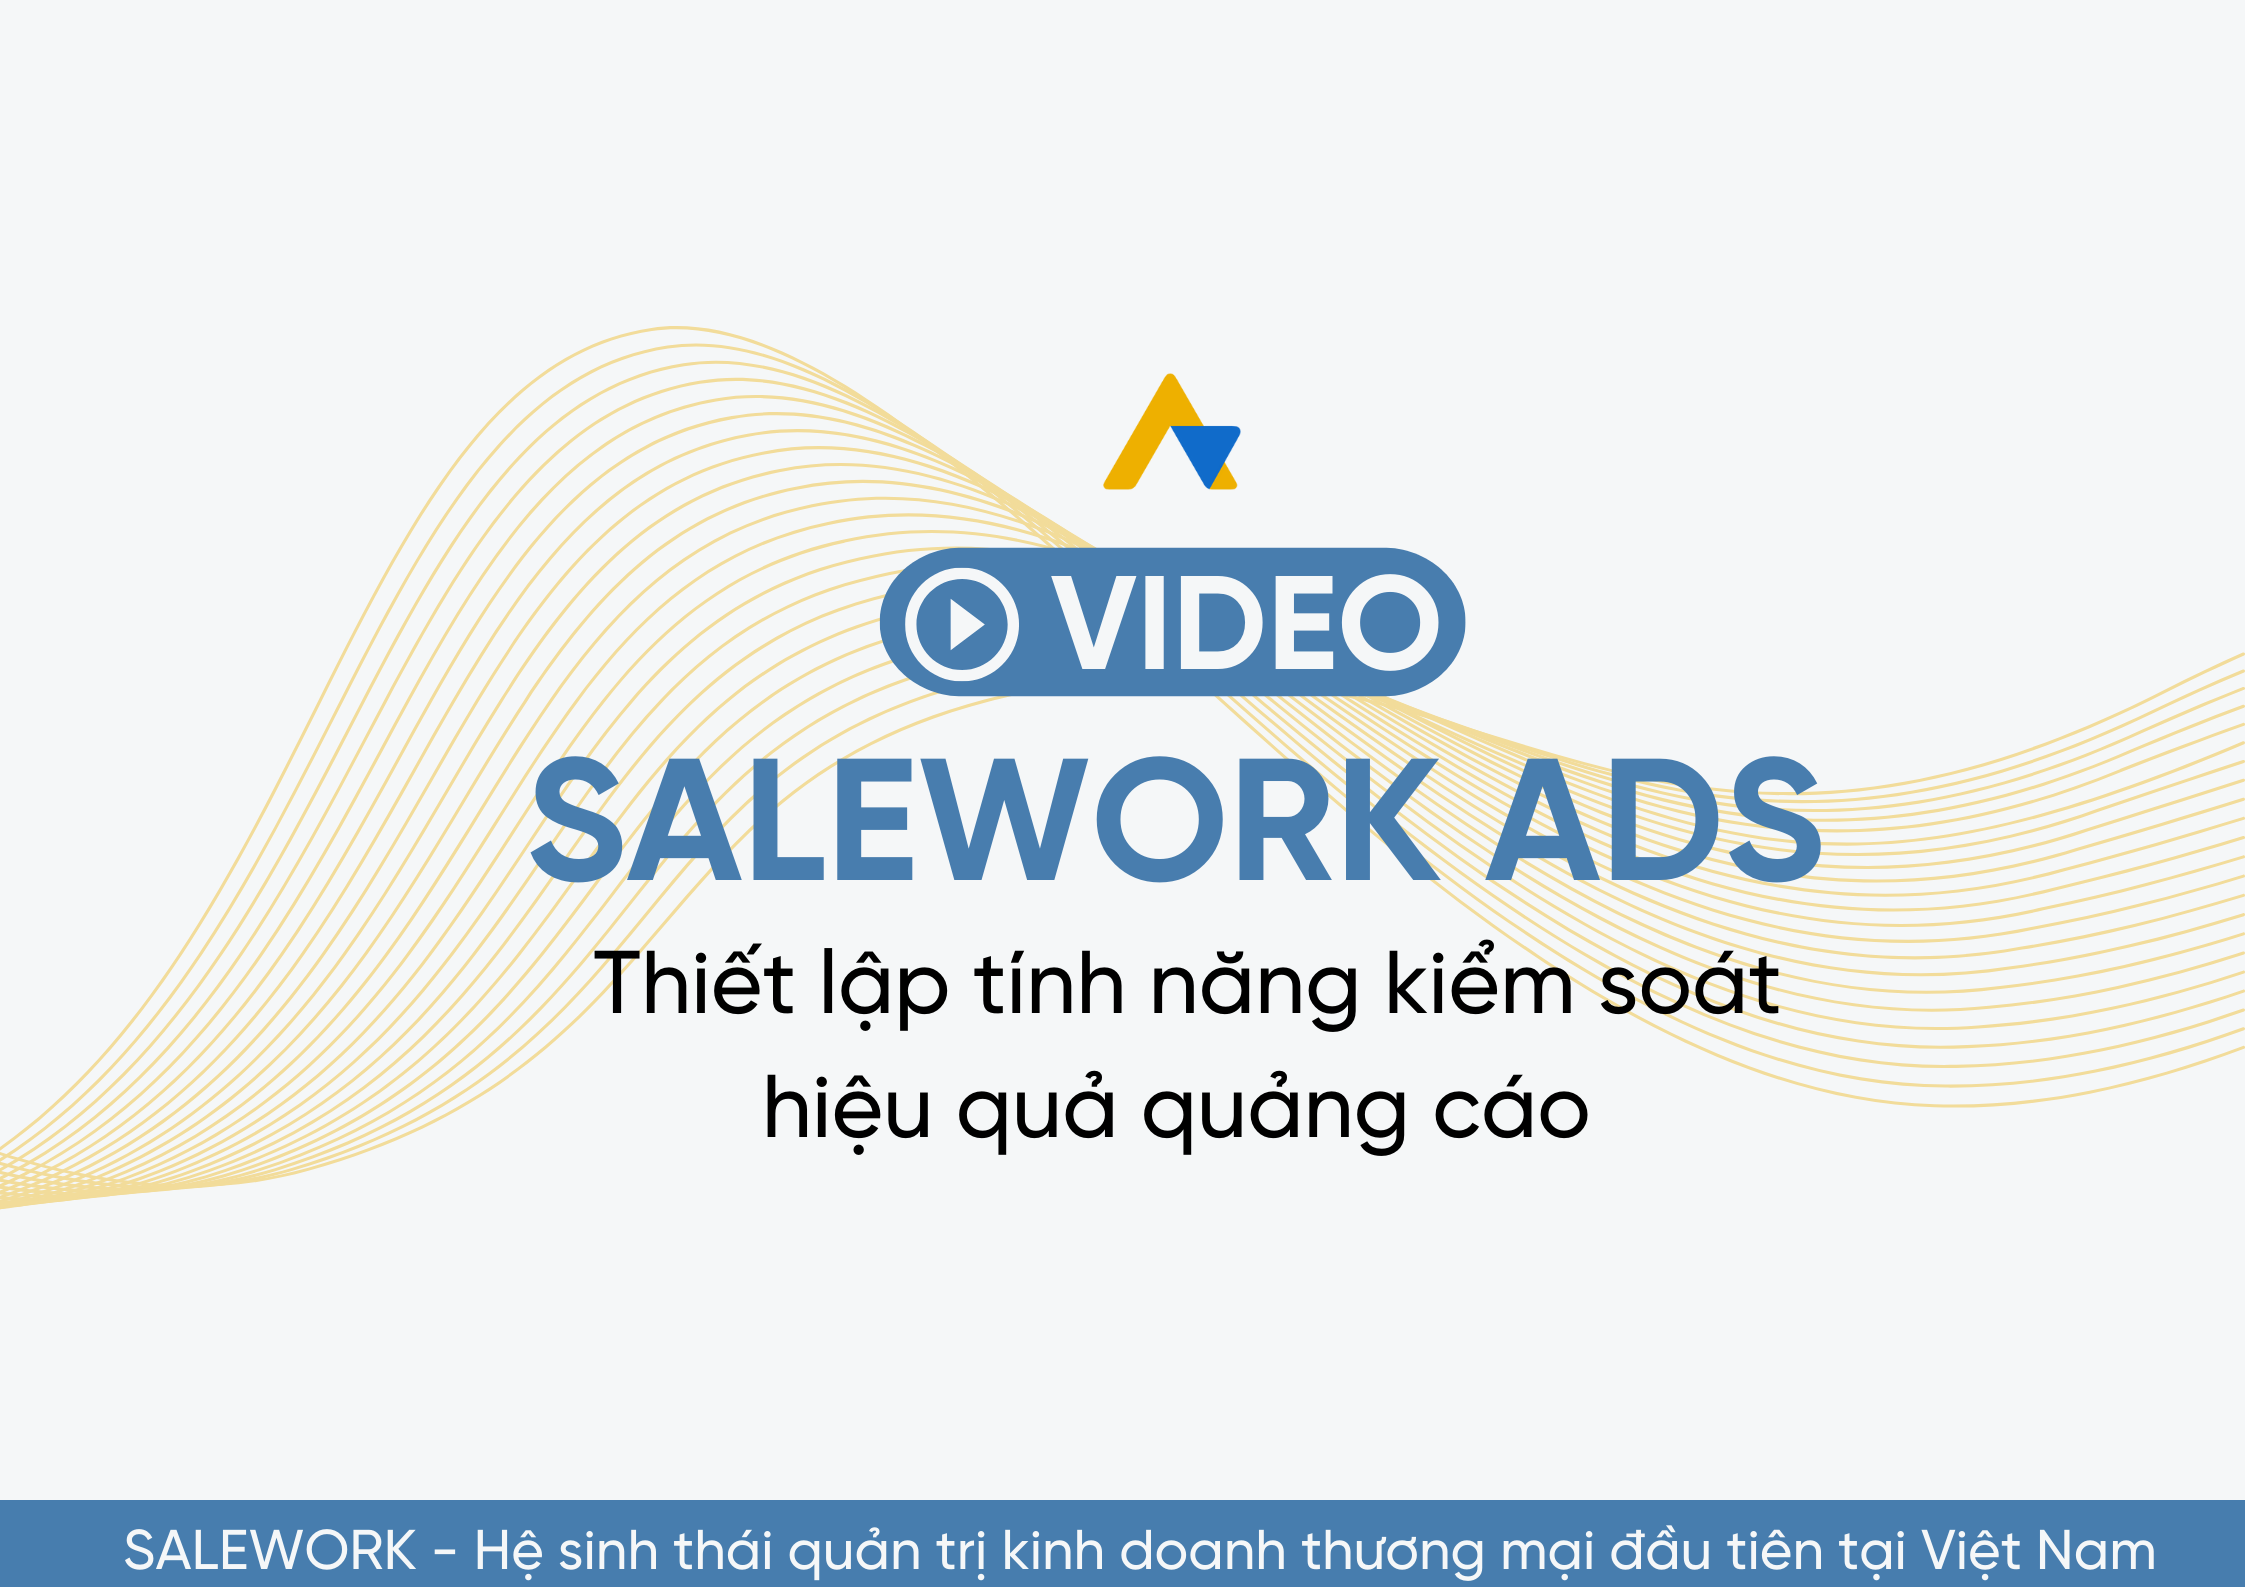 [VIDEO] Thiết lập tính năng kiểm soát hiệu quả quảng cáo tại Salework Ads - 10